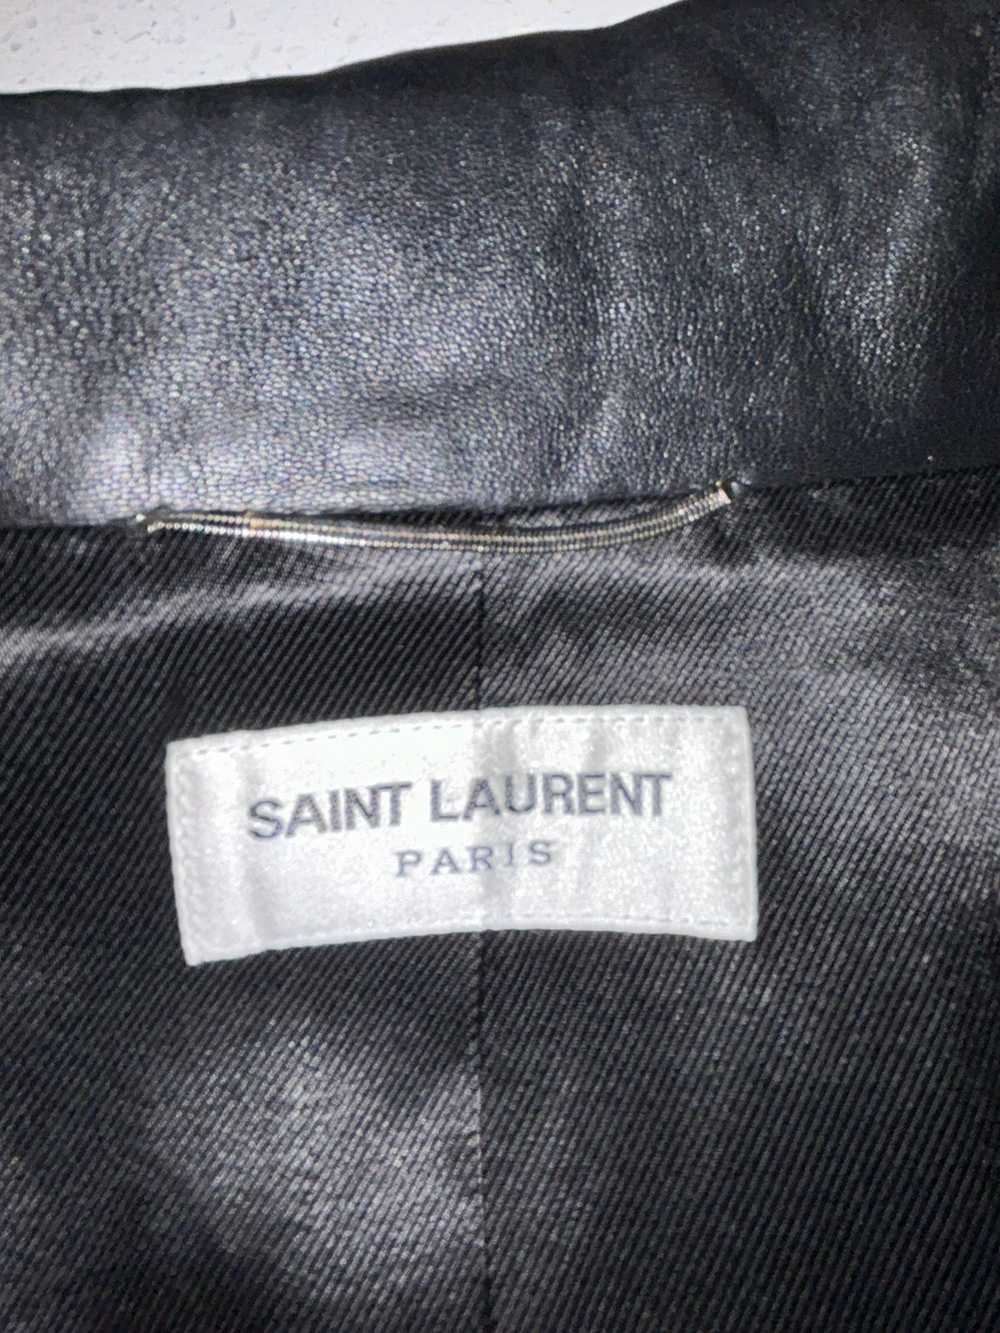 Saint Laurent Paris × Yves Saint Laurent *ULTRA R… - image 5